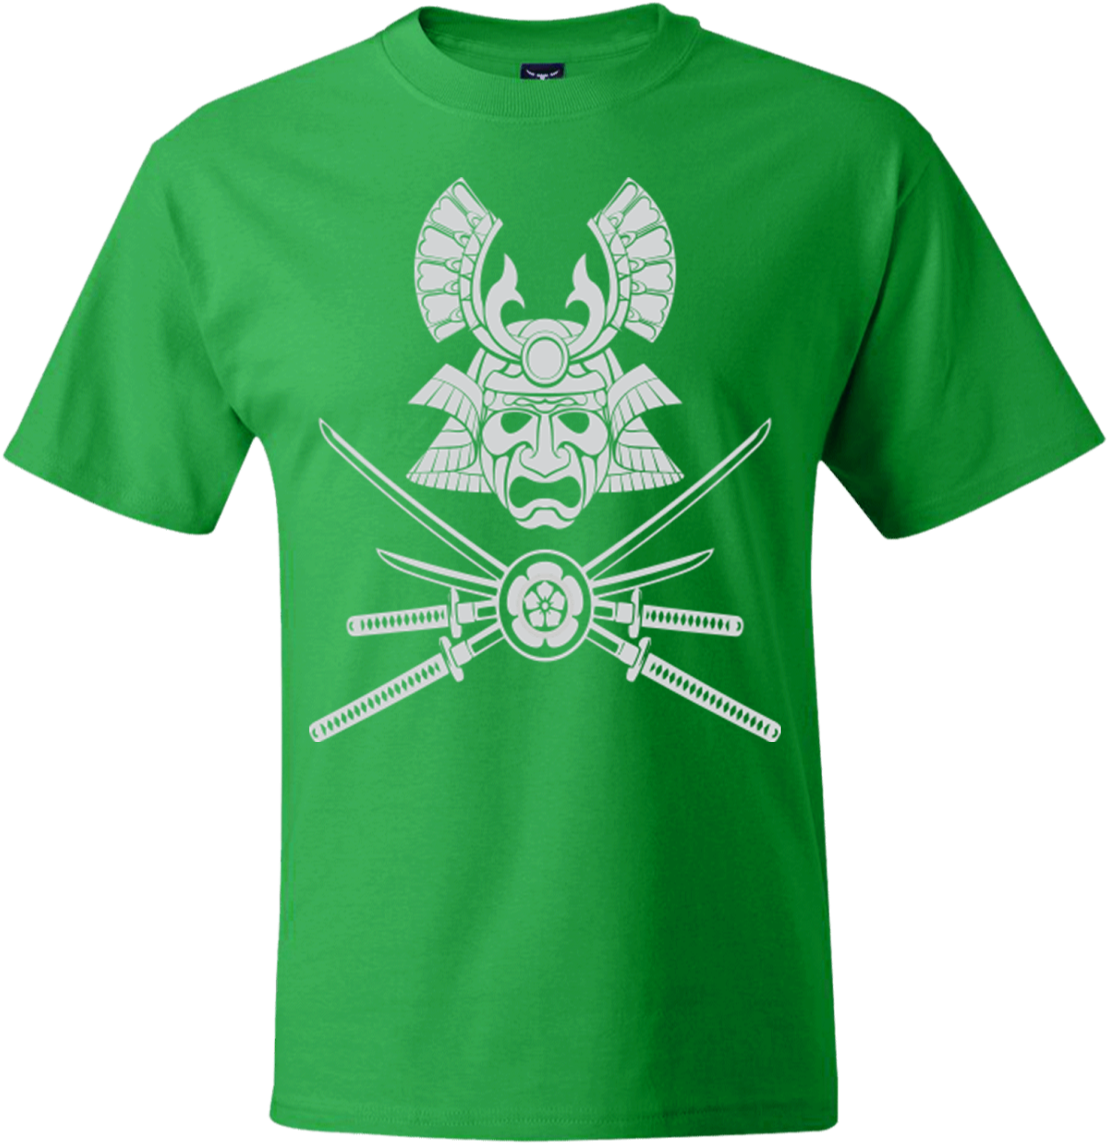 Samurai Helmet & Crossed Swords T-shirt - T Shirt (1155x1155), Png Download